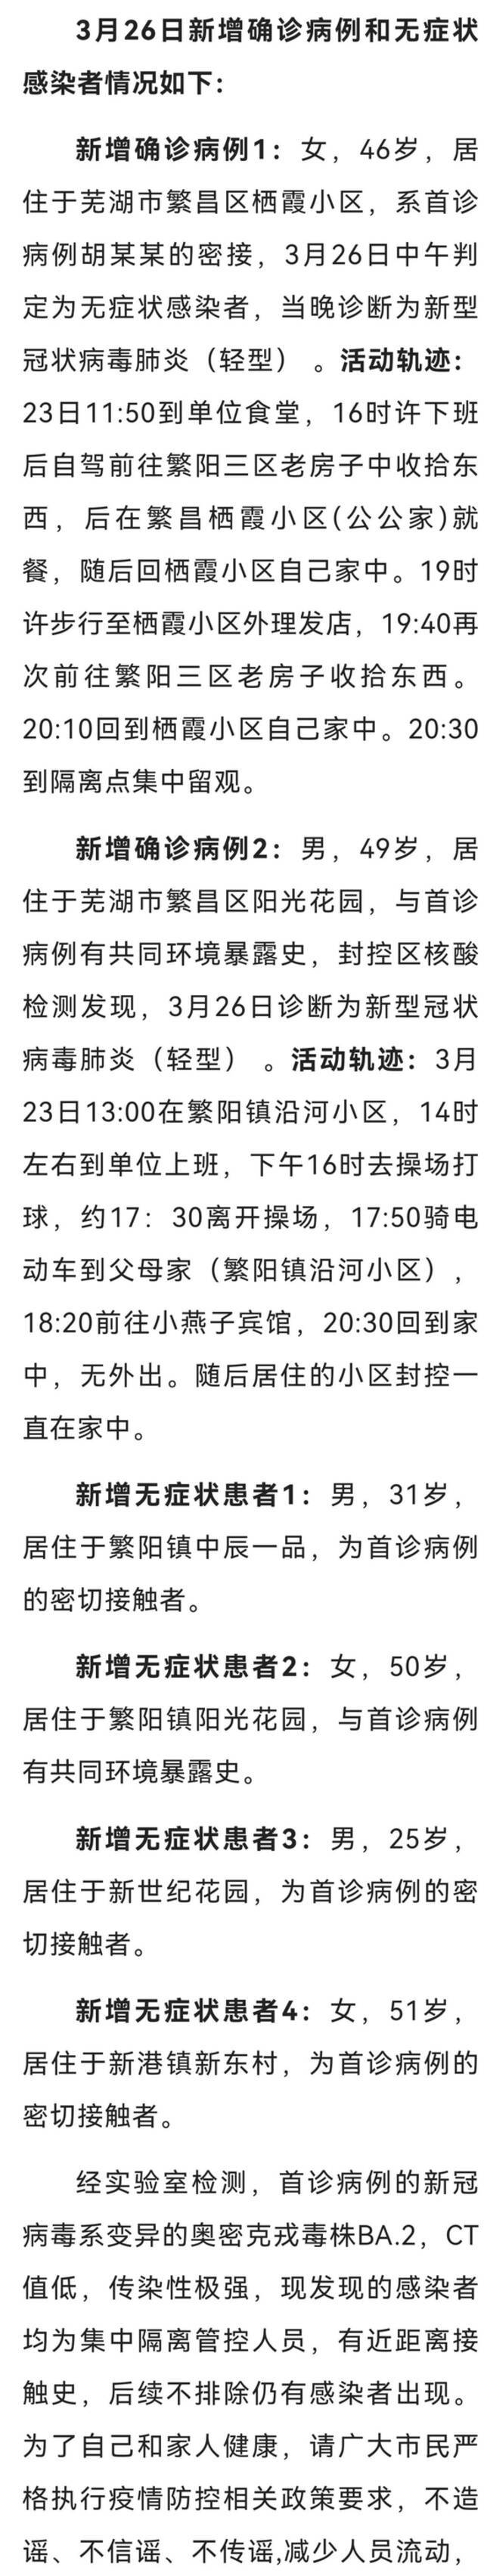 安徽芜湖繁昌区新增2例确诊病例、4例无症状感染者 活动轨迹公布